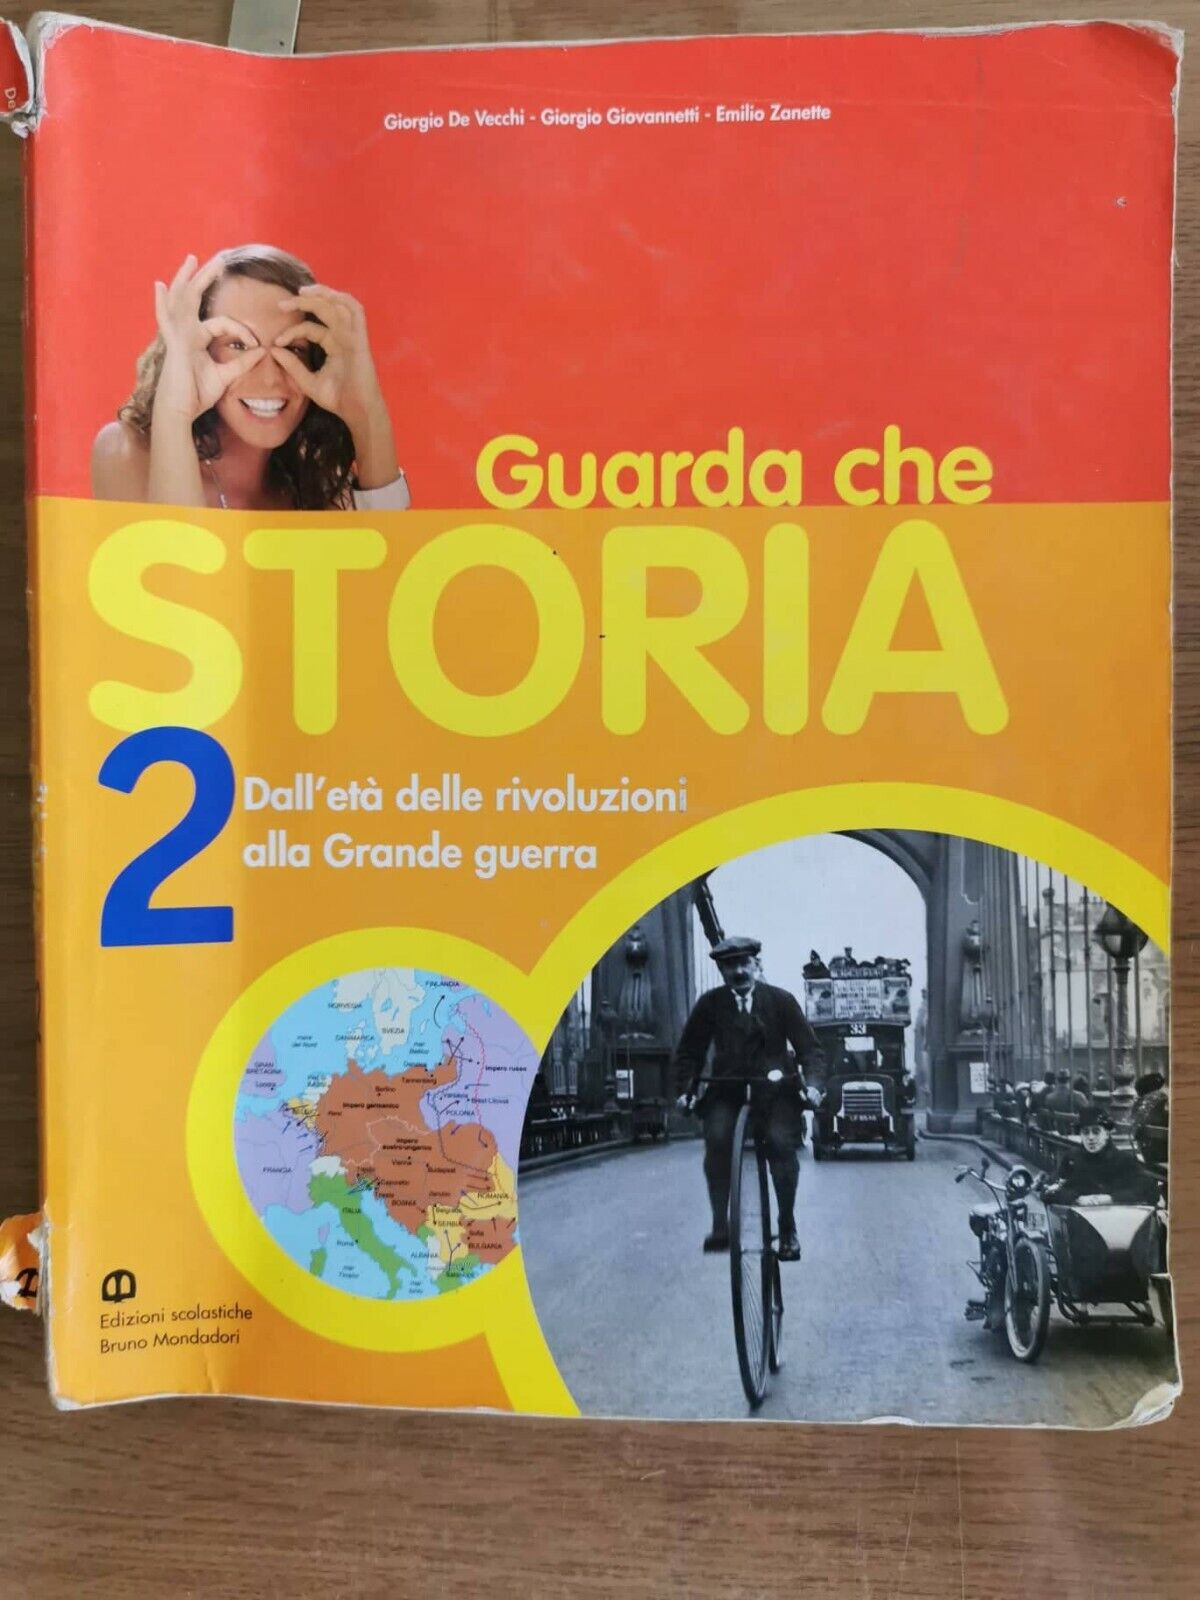 Guarda che storia 2 - AA. VV. - Mondadori - 2010 - AR